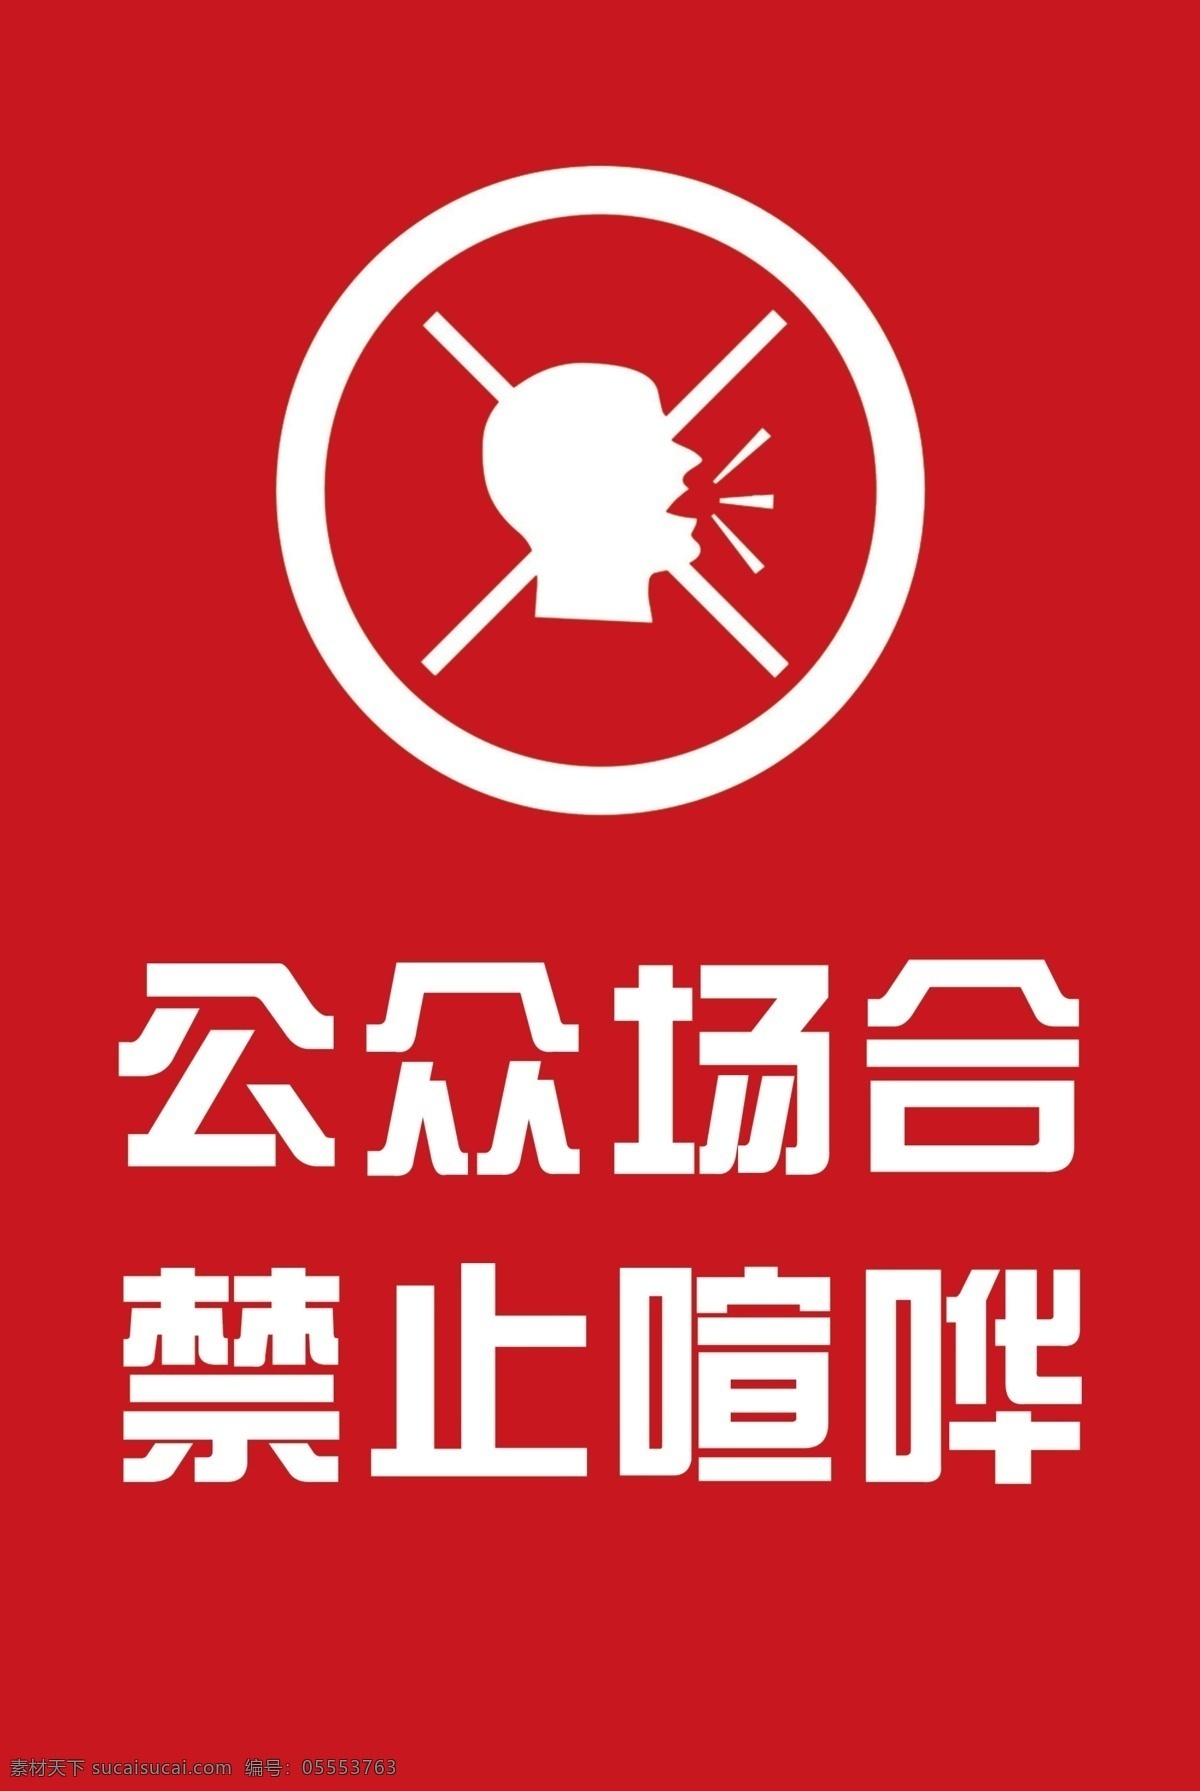 公众宣传 禁止标识 文明标识 公众场合 禁止喧哗 标志图标 公共标识标志